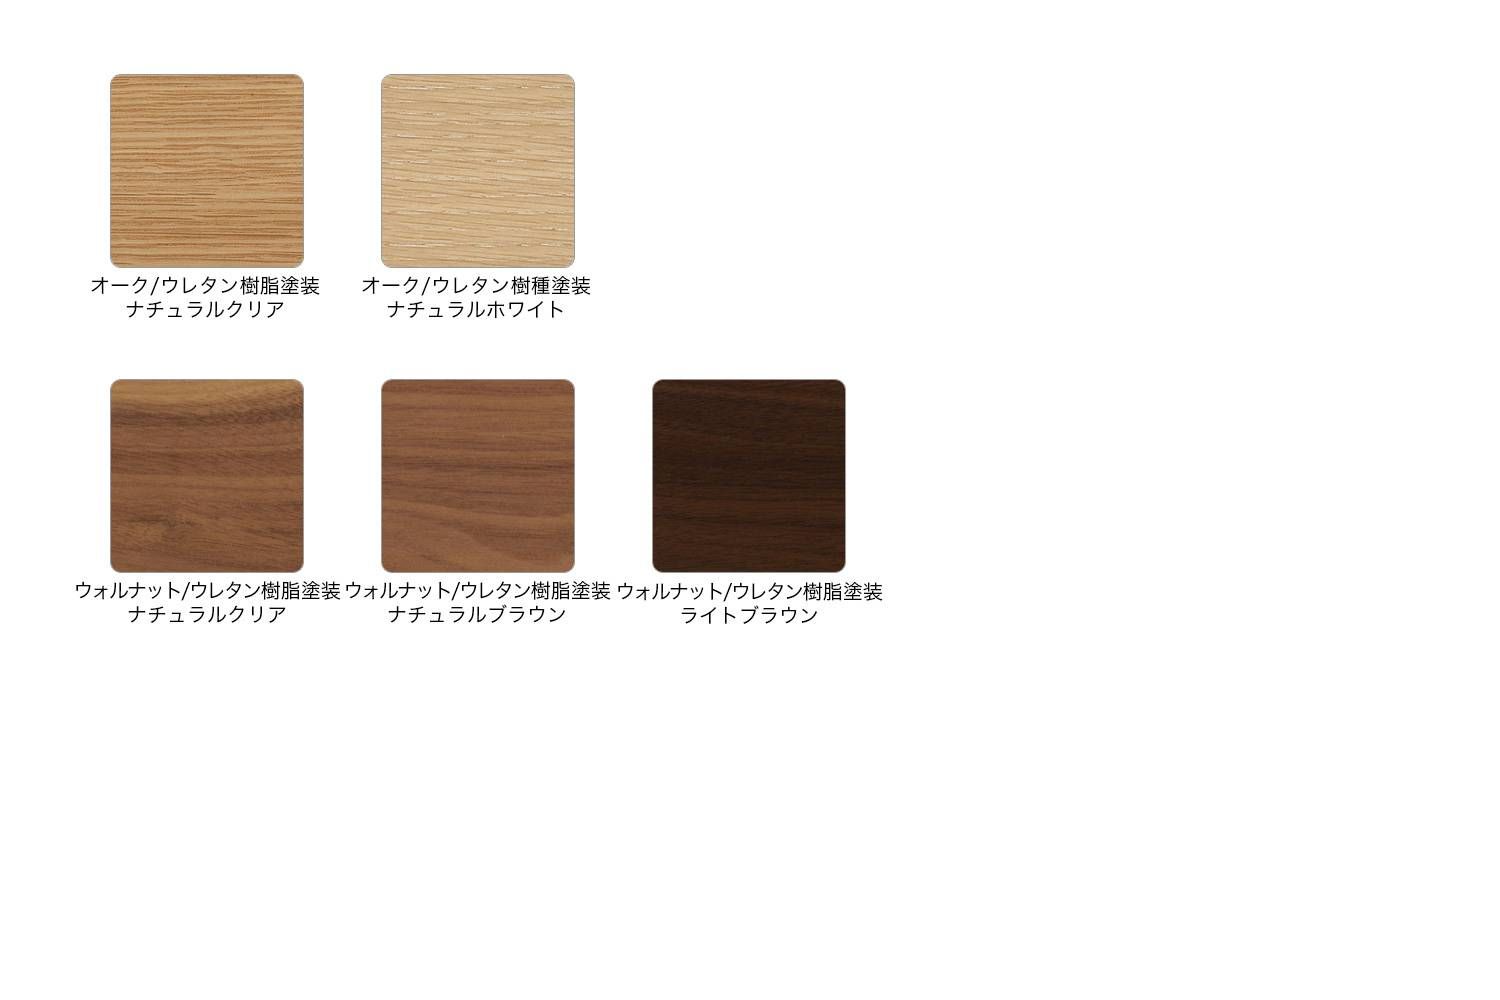 マルニ木工 タコ ダイニングテーブル コーリアン 180 / 200 / 220 / 240 ウッド カラーバリエーション